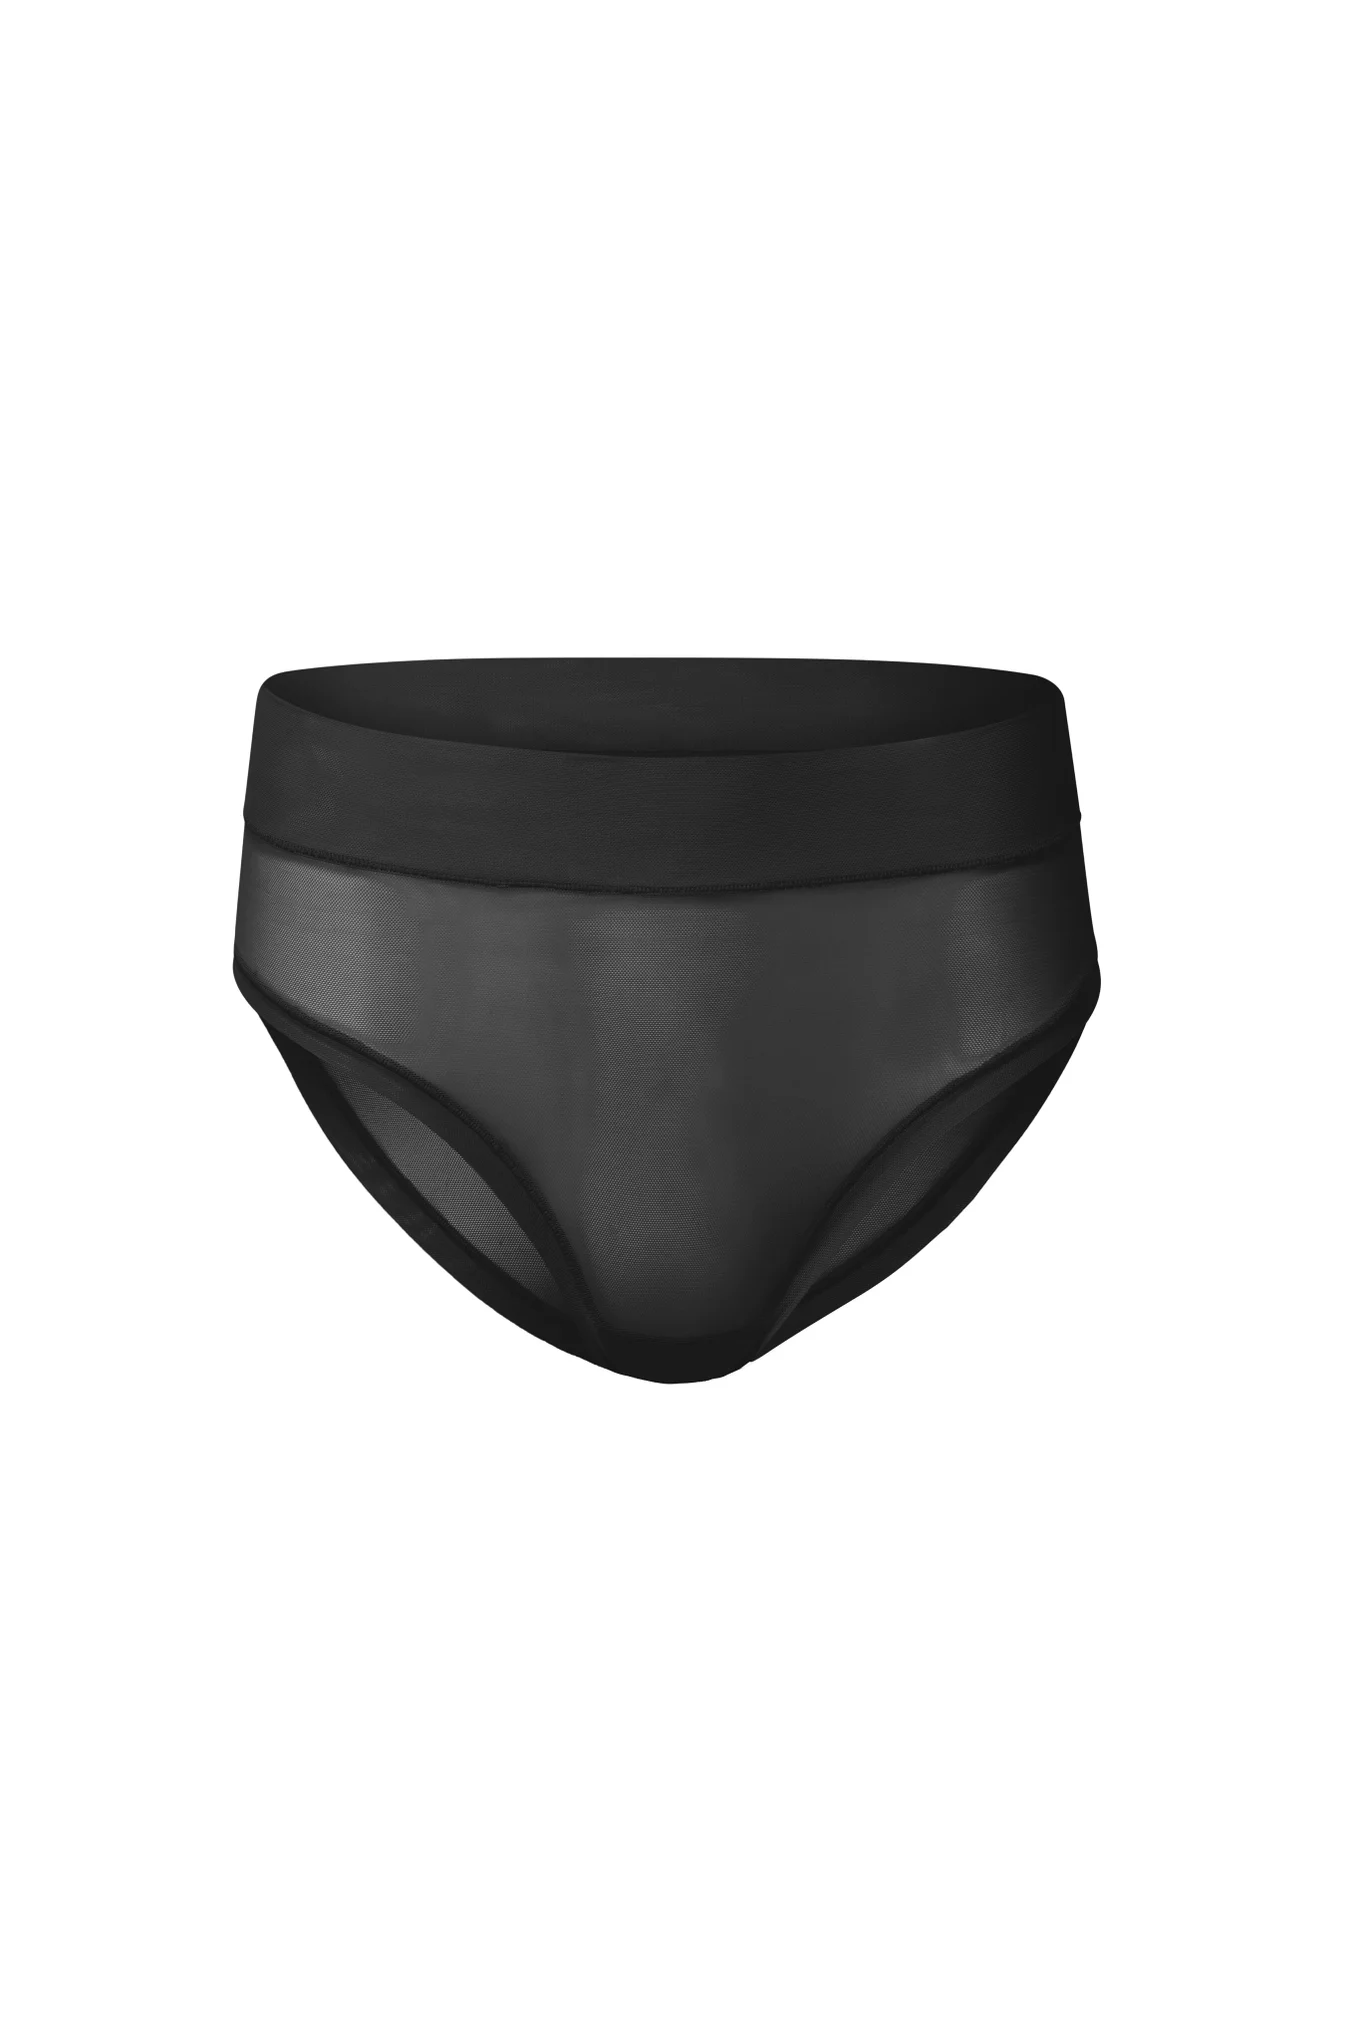 Genie Slim Panties 360 2 pack Nude/Black 2X - Retail Box - As Seen On –